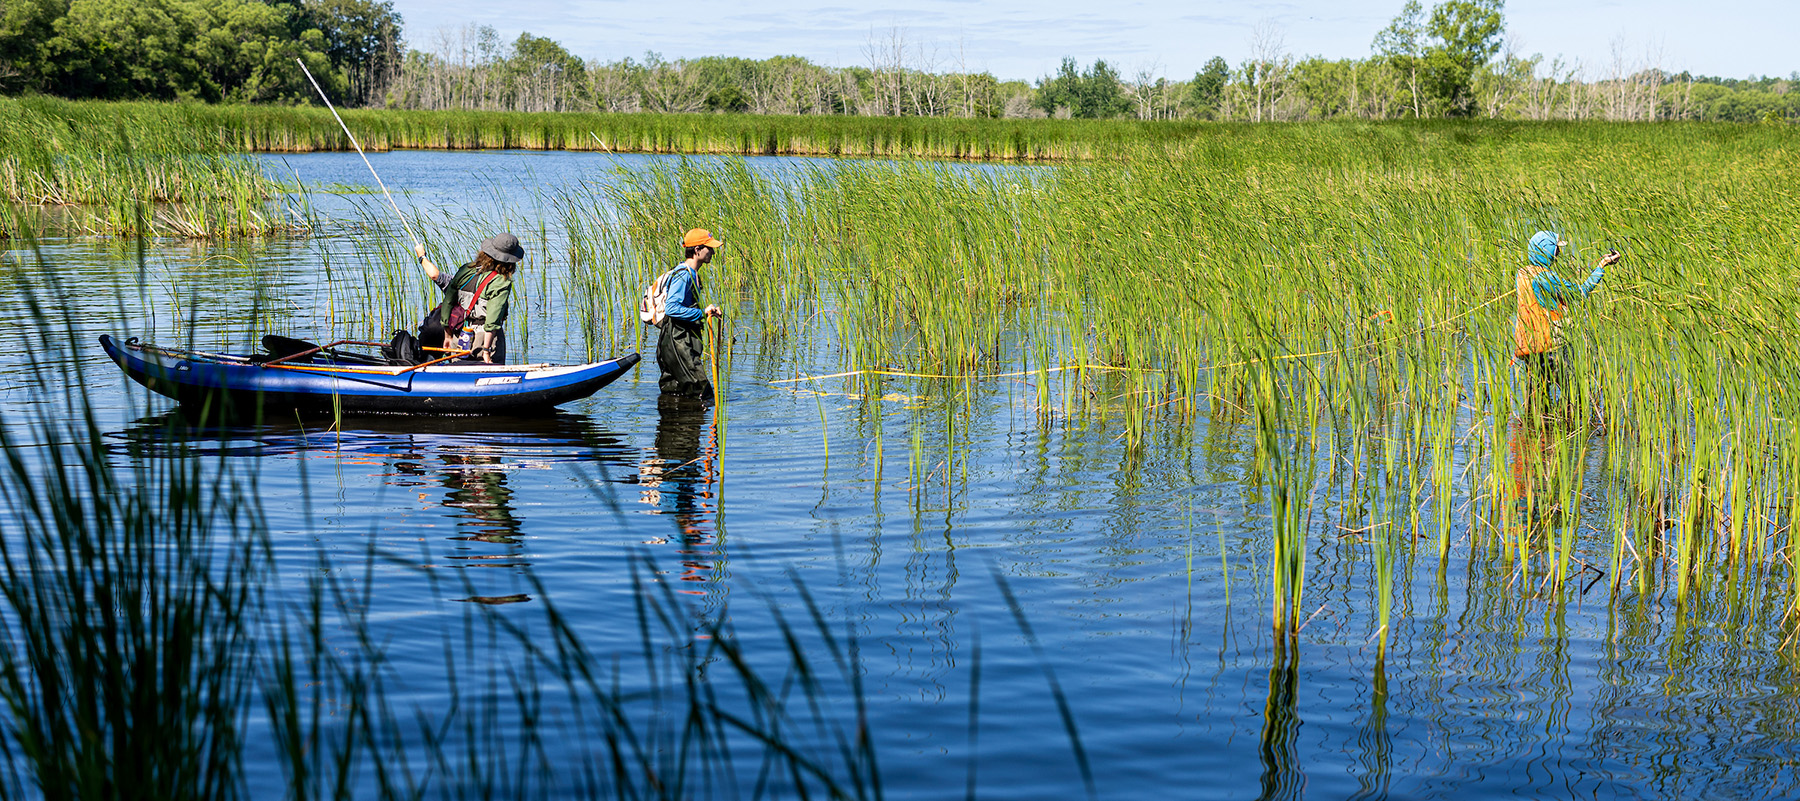 researchers in waders walking in a wetland